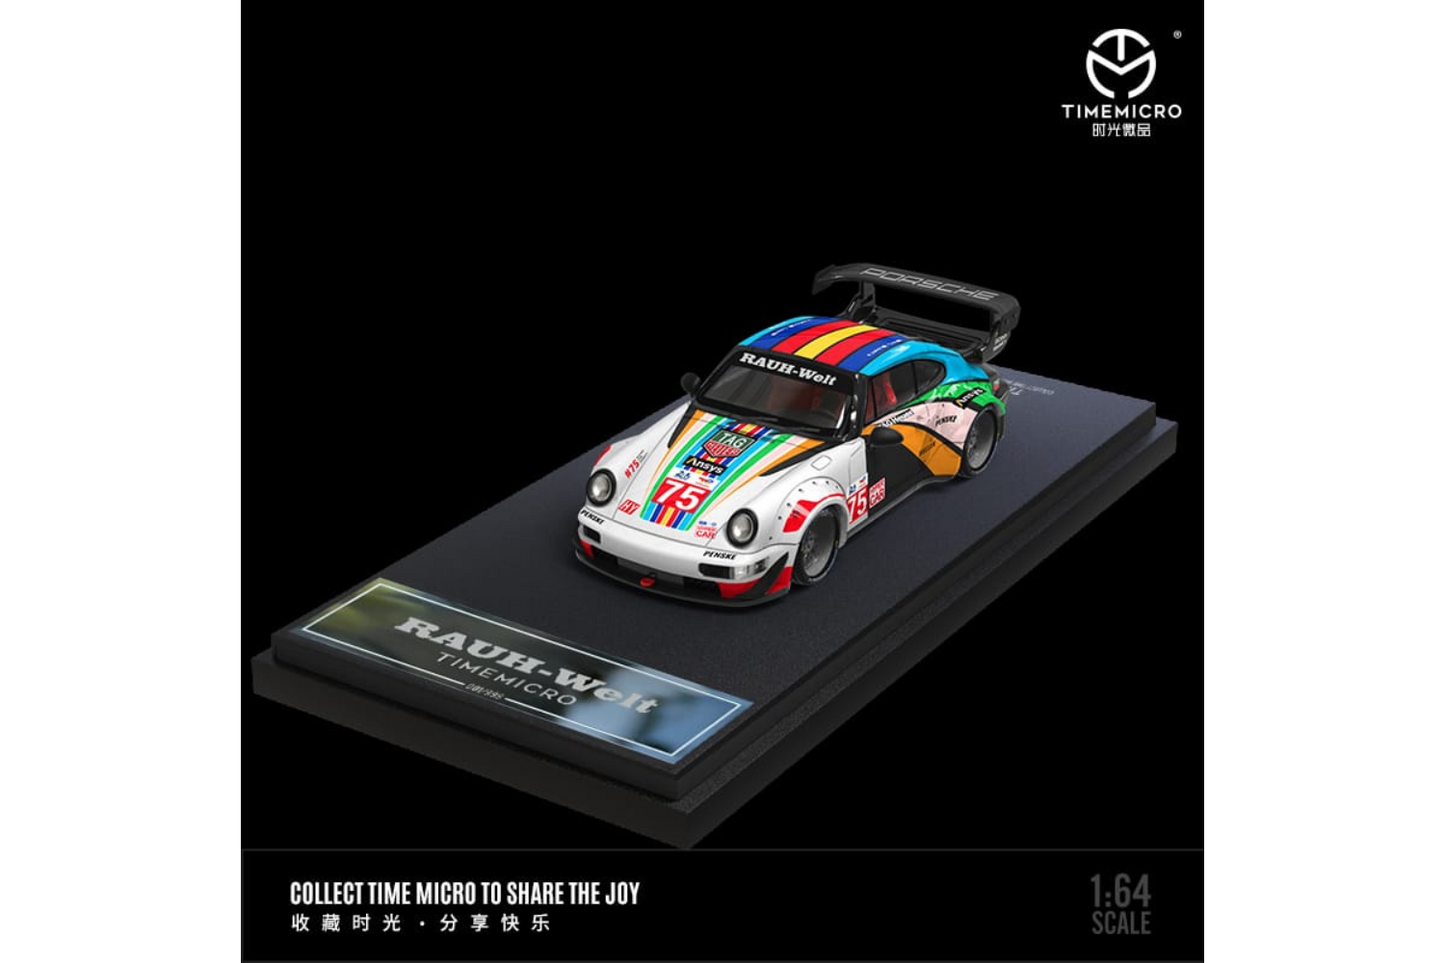 Time Micro 1/64 Porsche 911 RWB964 in Centennial Le Mans Livery